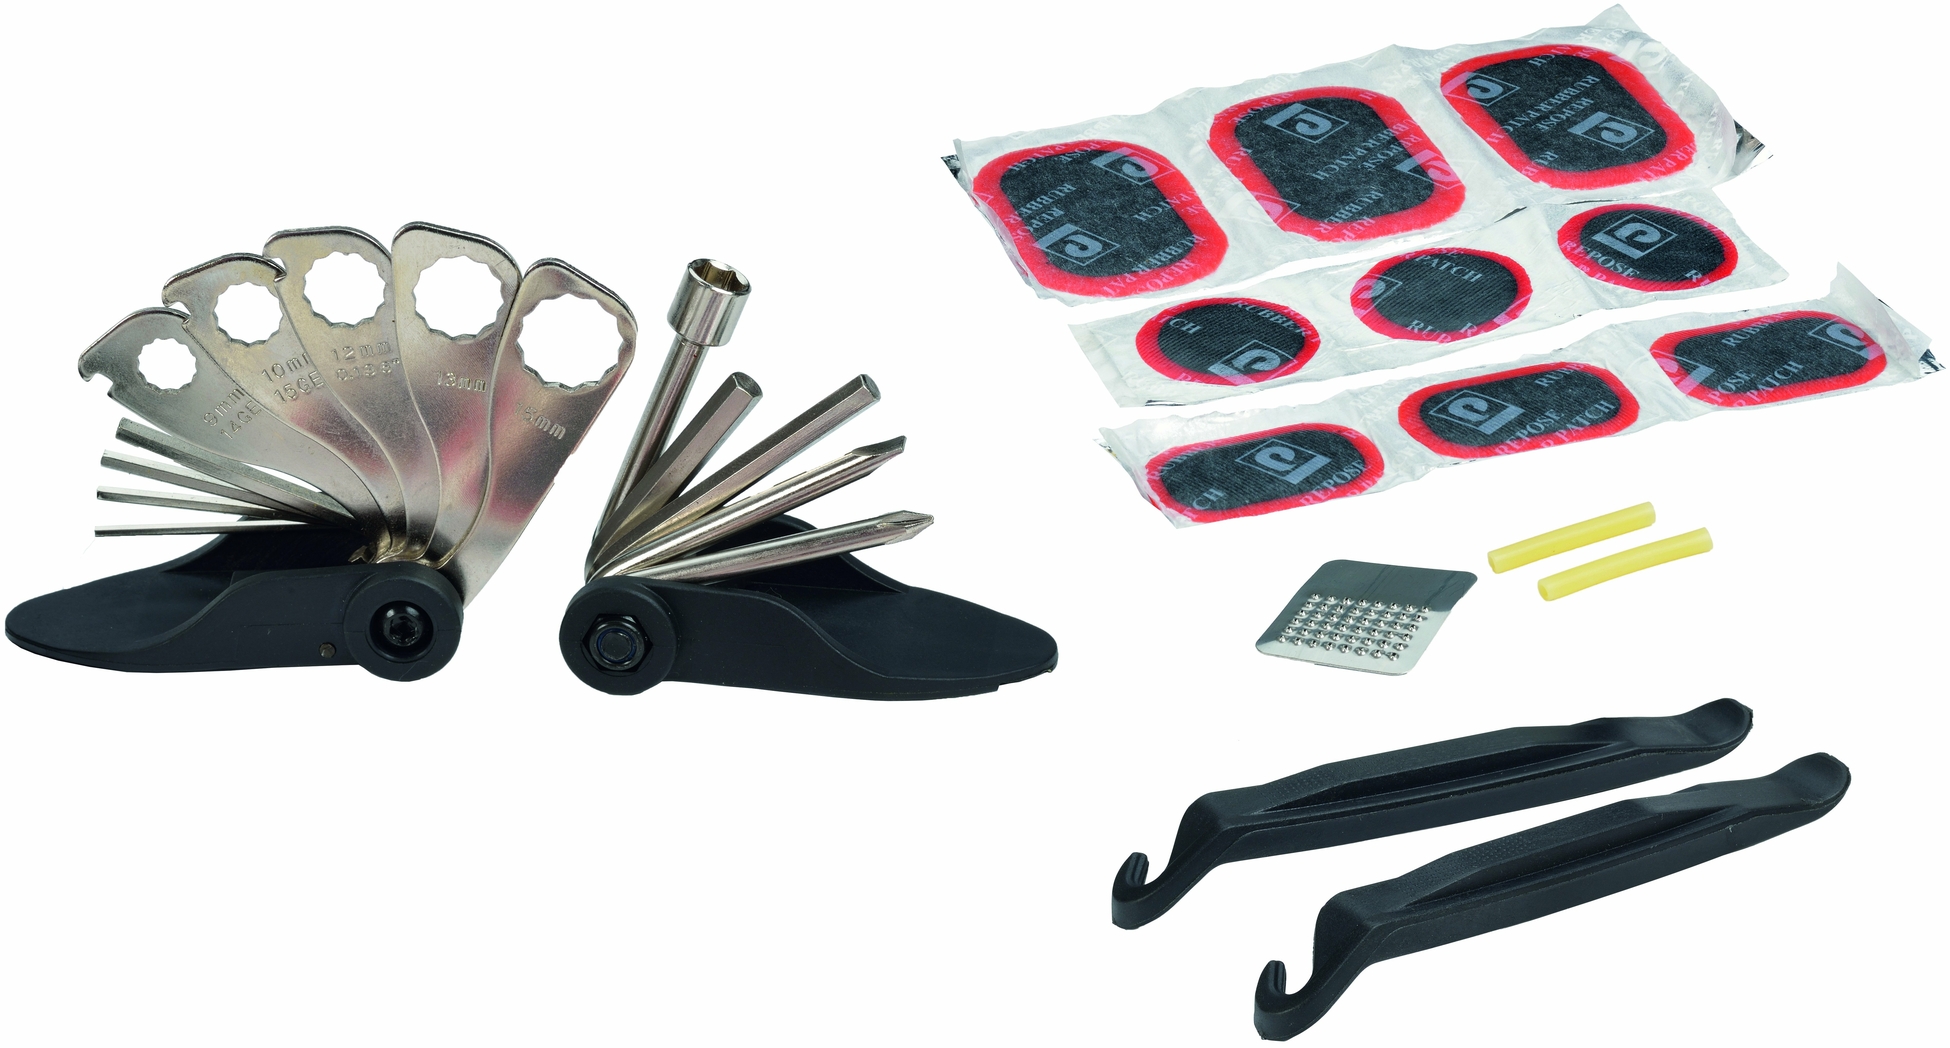 Fuxon Miniwerkzeug mit 15 Funktionen